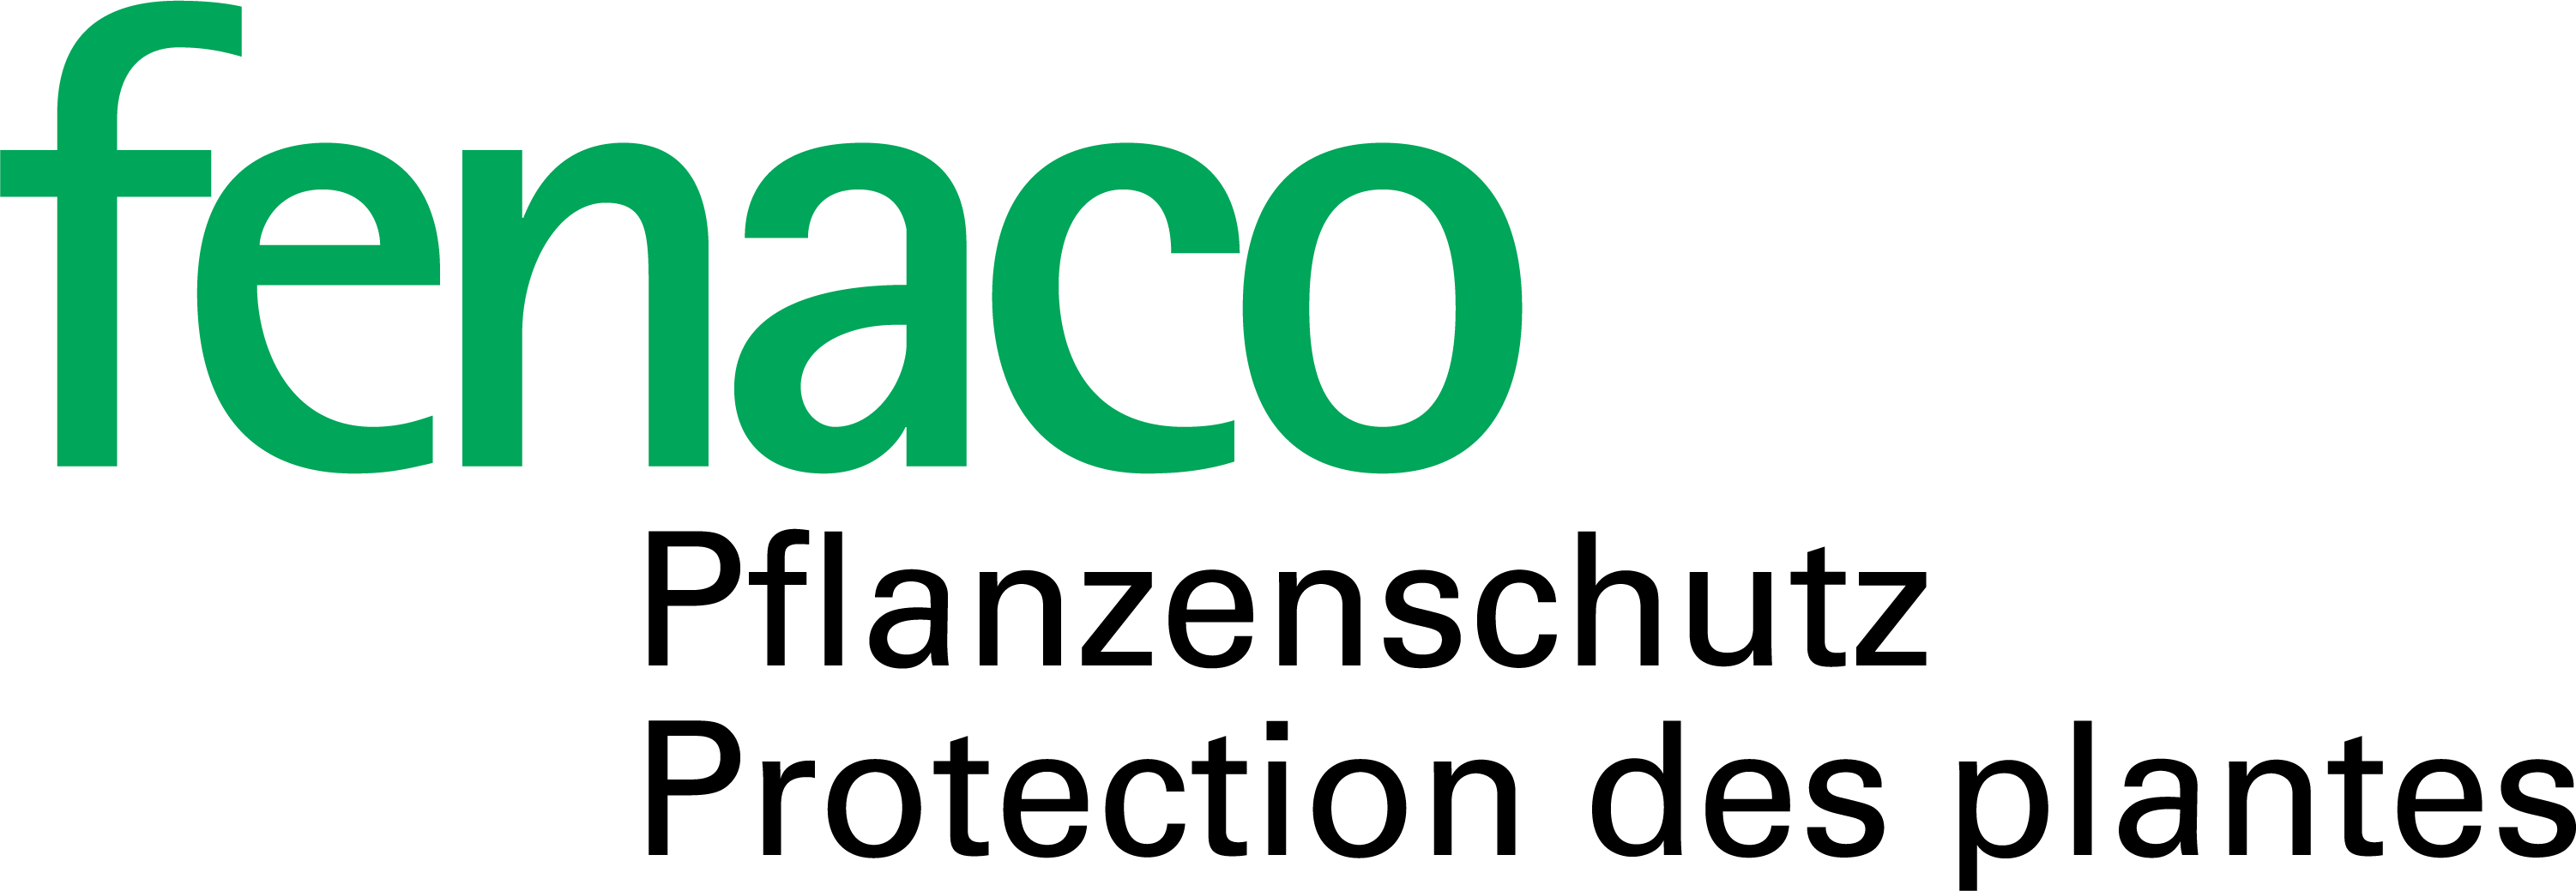 fenaco Pflanzenschutz: Logo